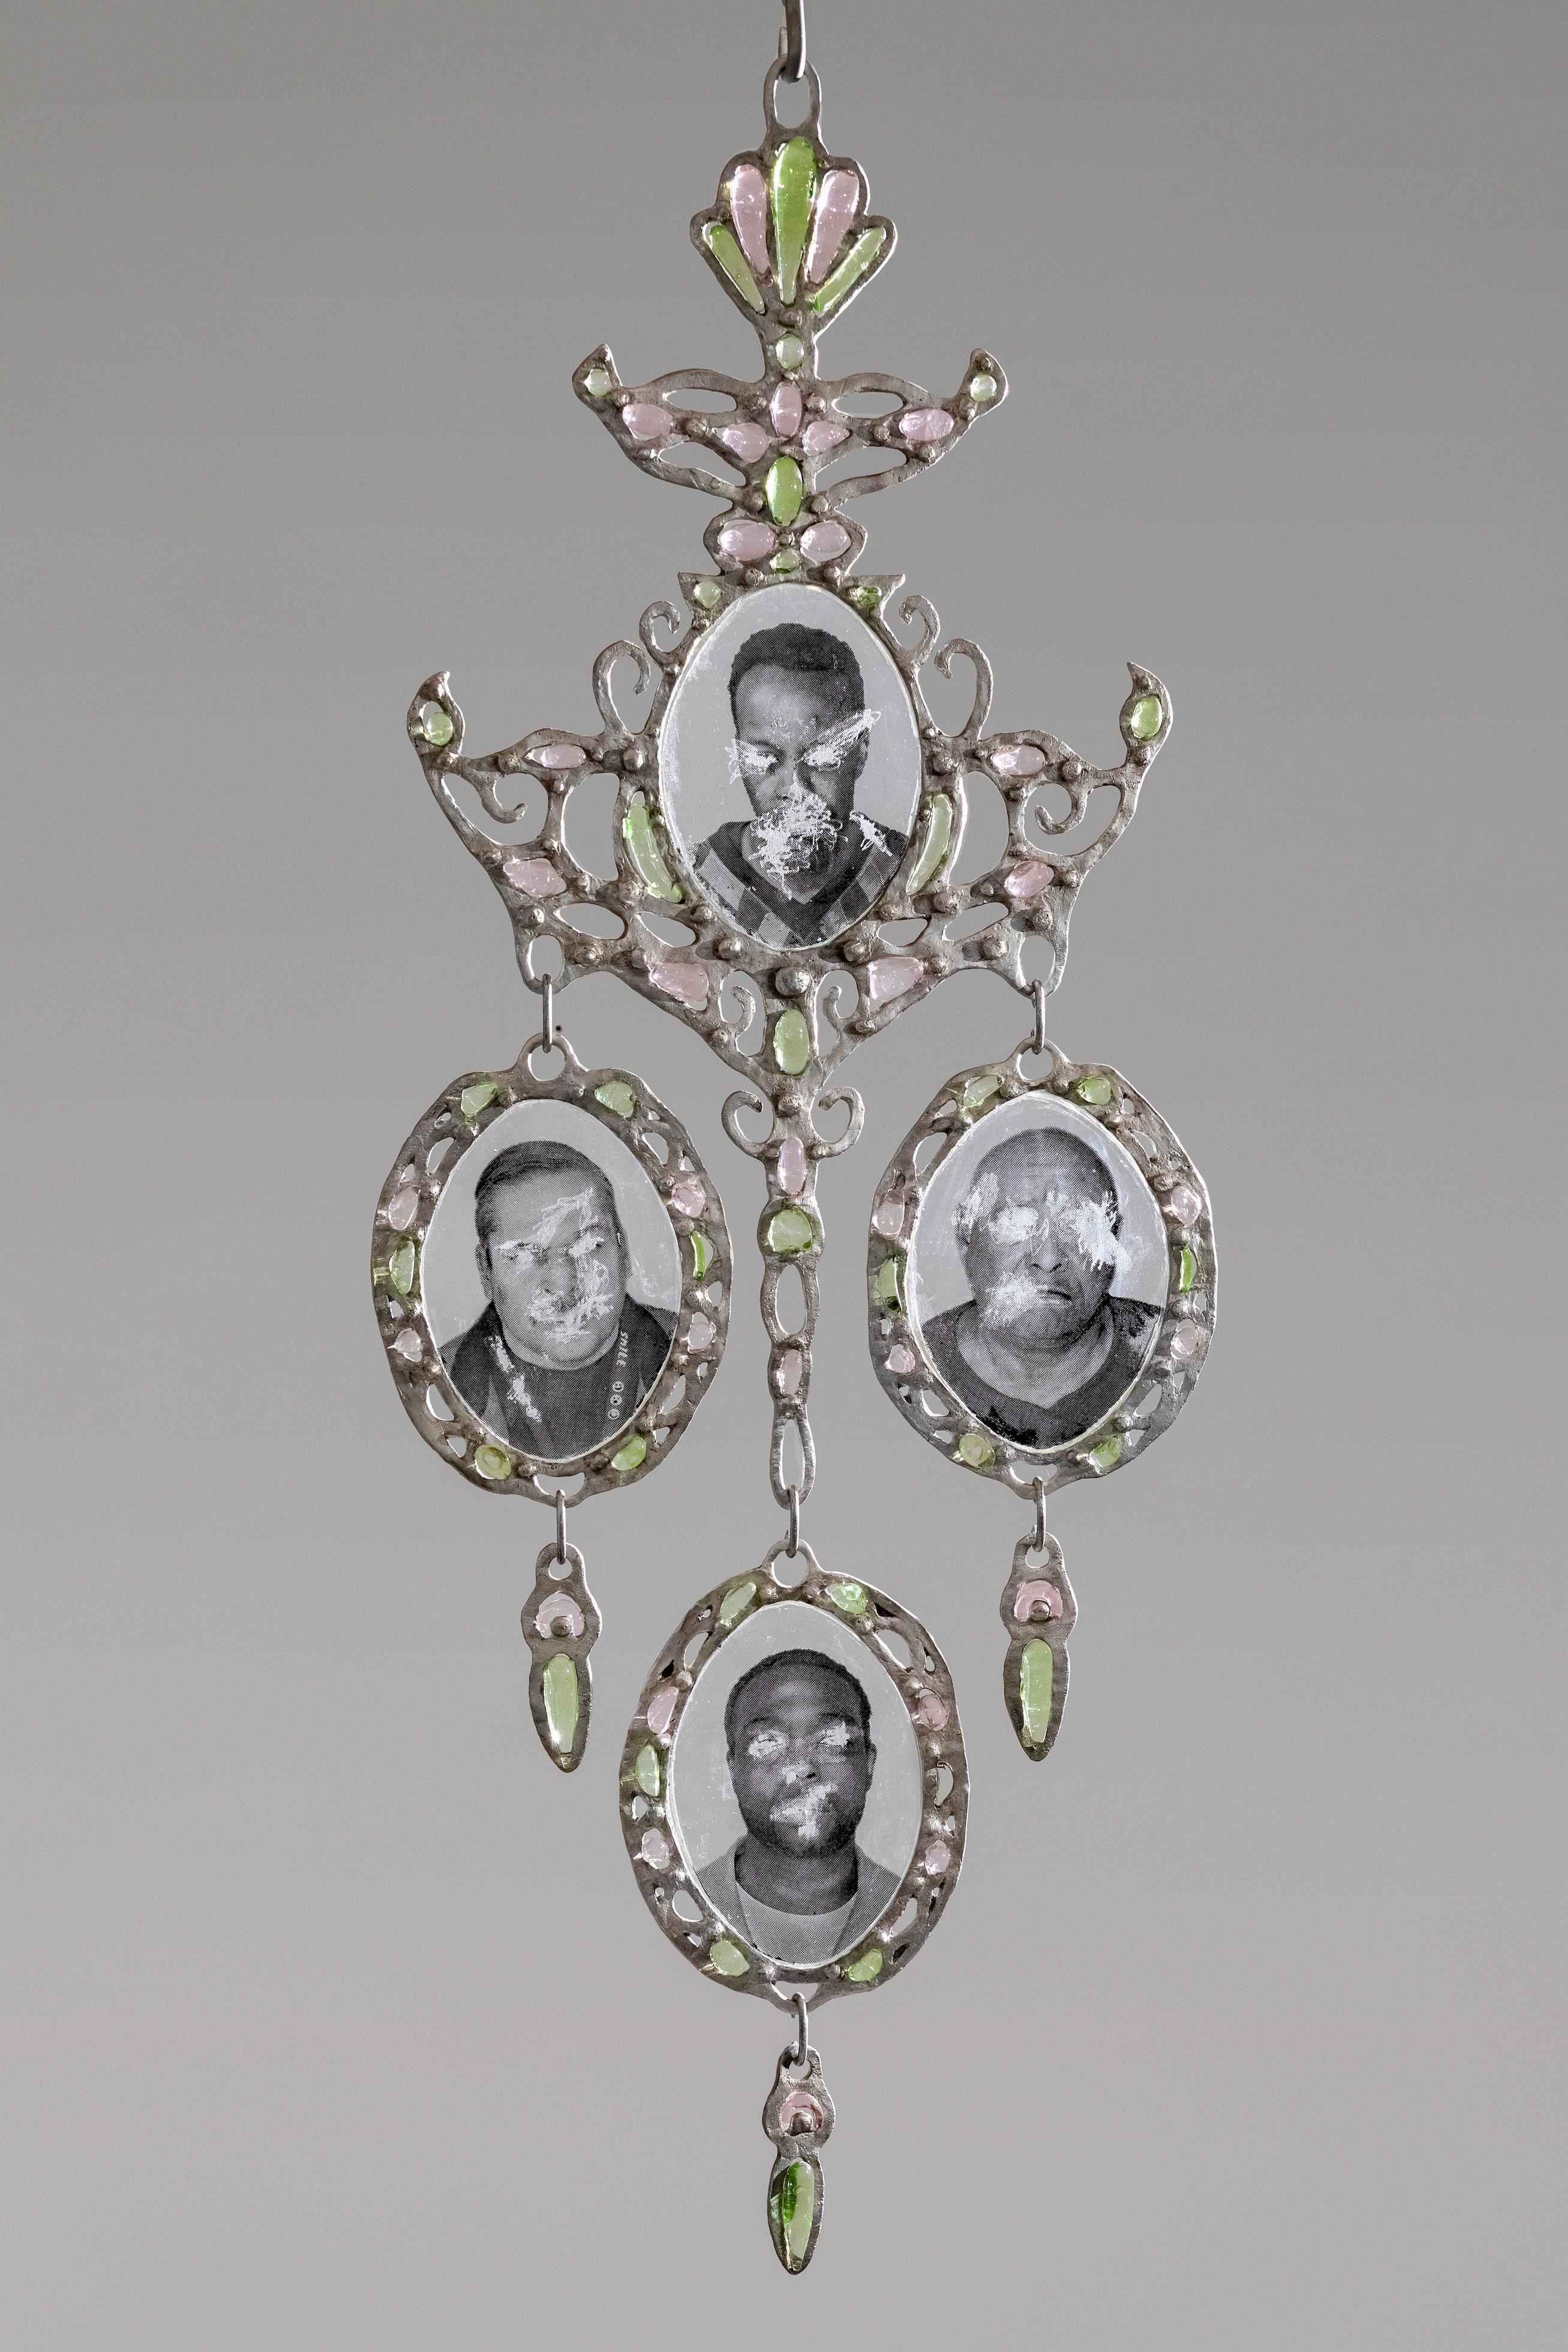 Chandelier Earrings - Sculpture by Marsha Pels